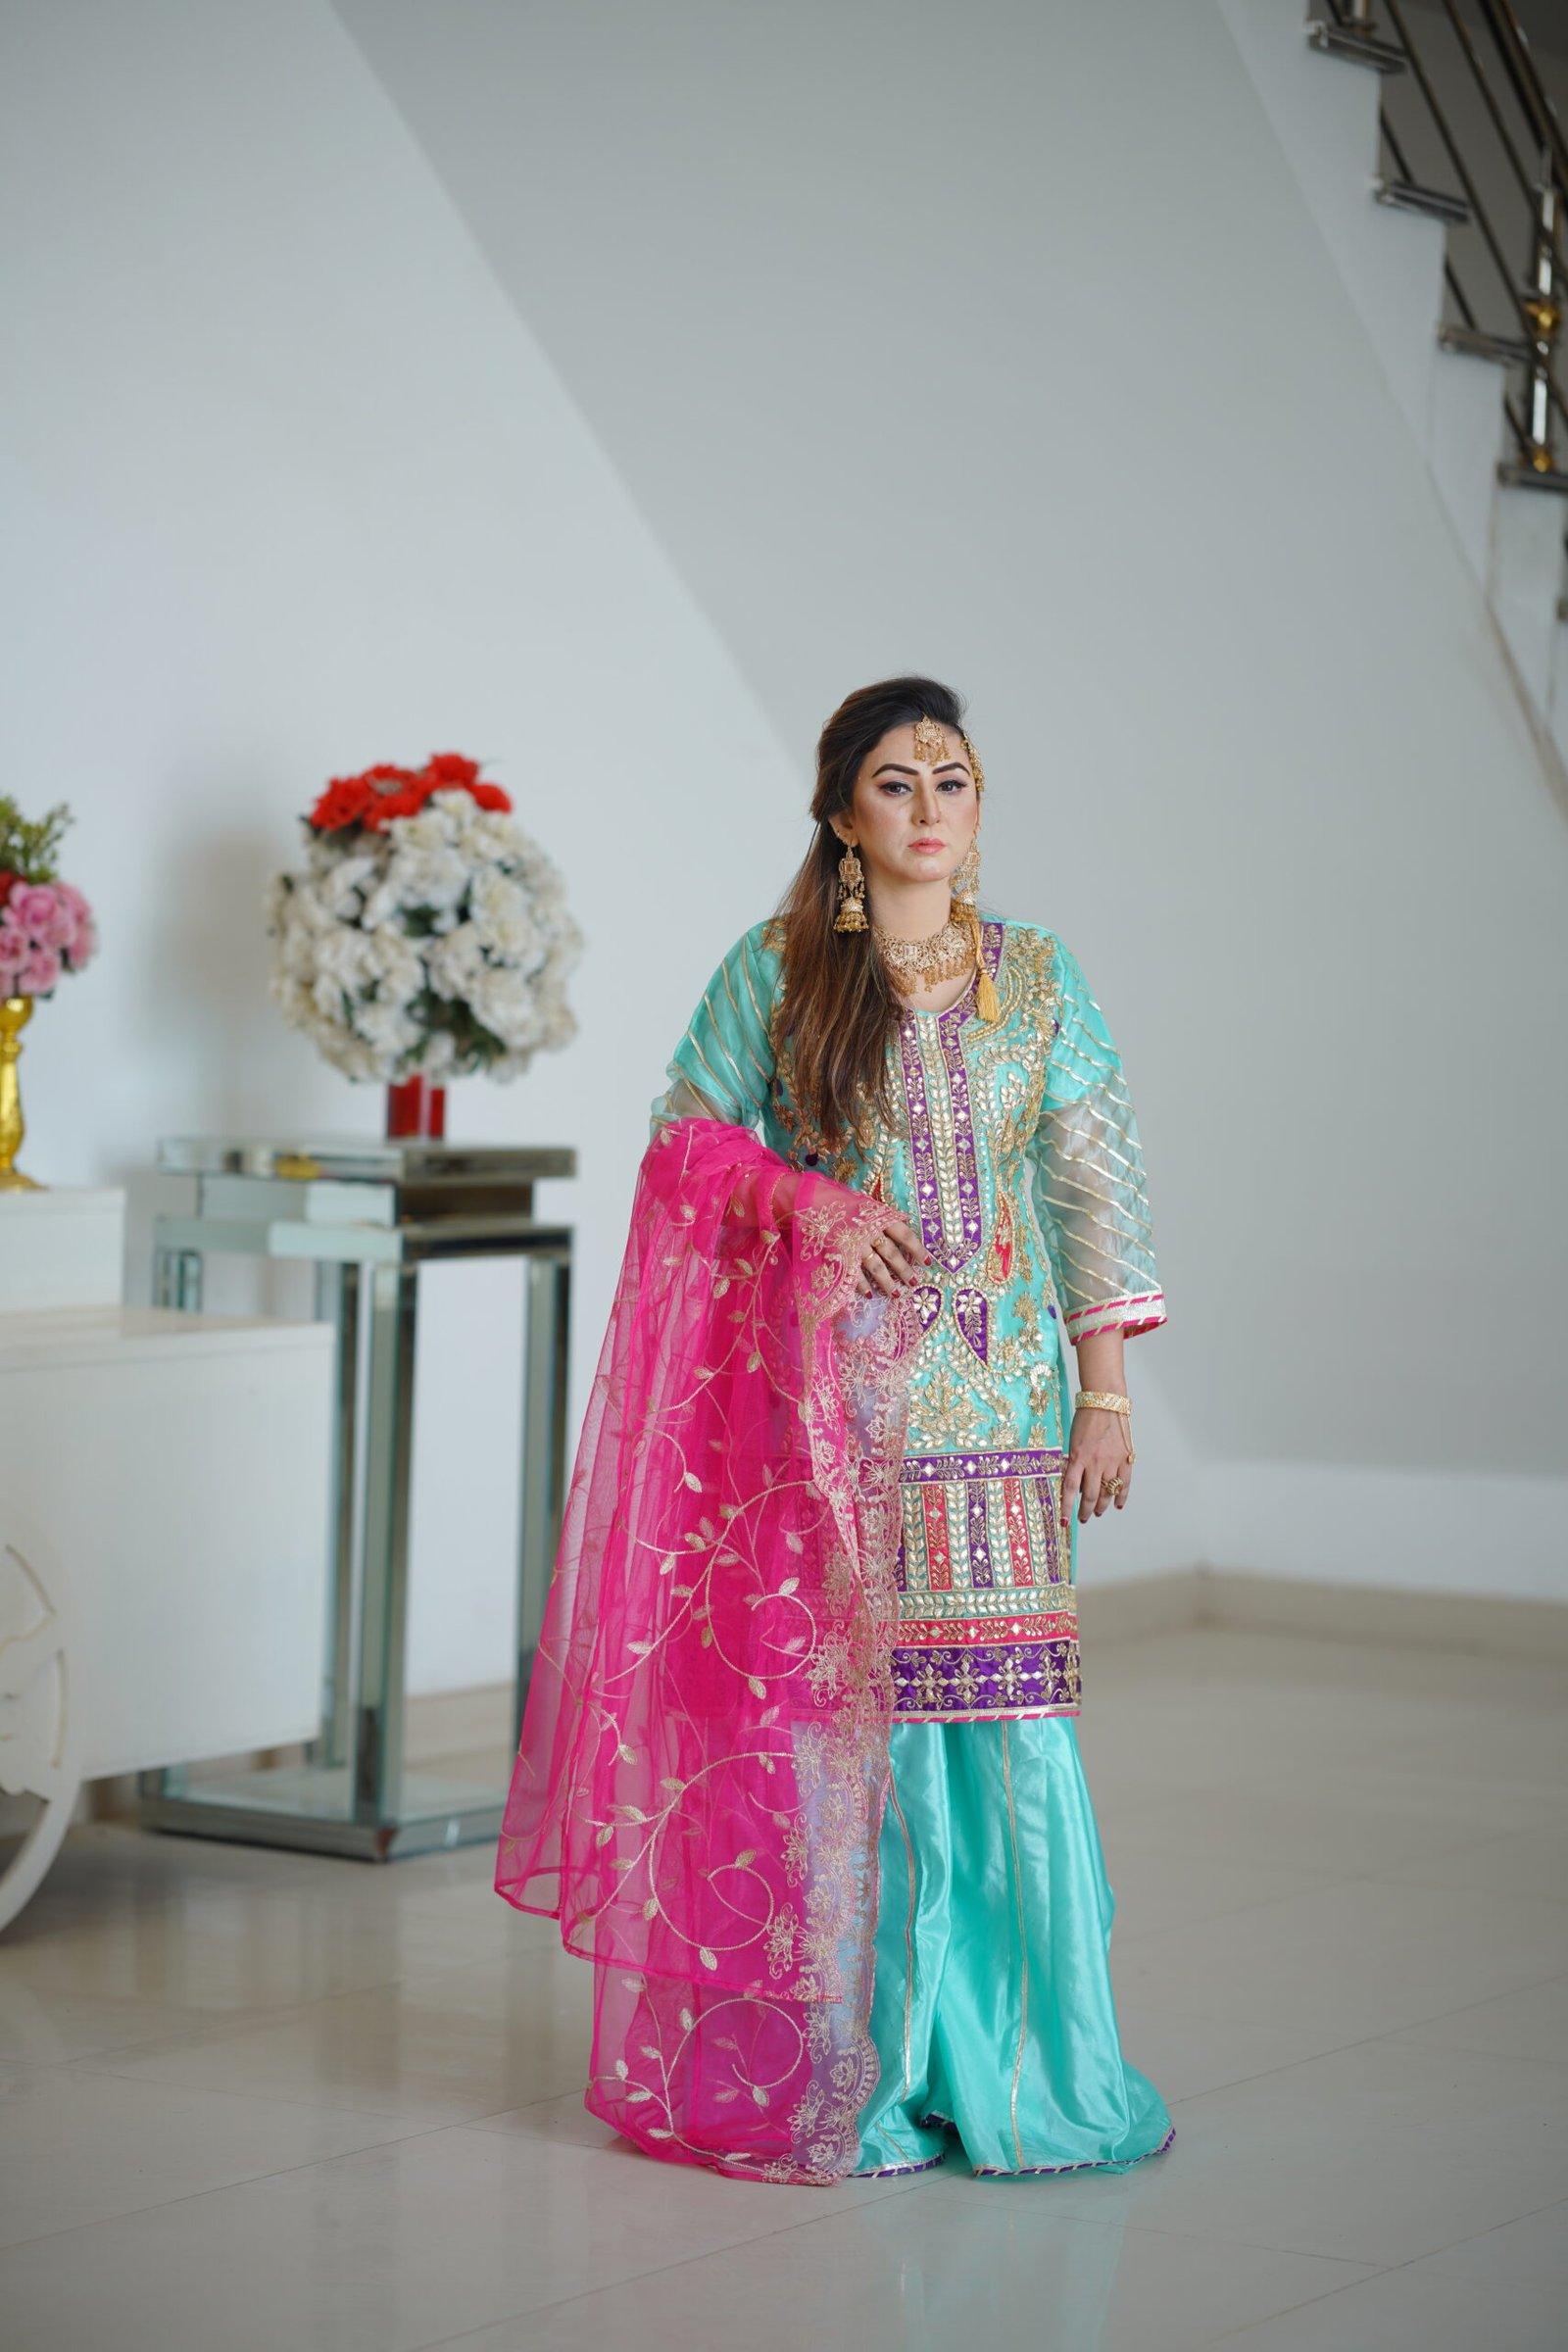 Pin by 👑mar u.j👑 on Mehndi brides makeup hair | Pakistani bridal dresses, Bridal  dresses pakistan, Bridal mehndi dresses